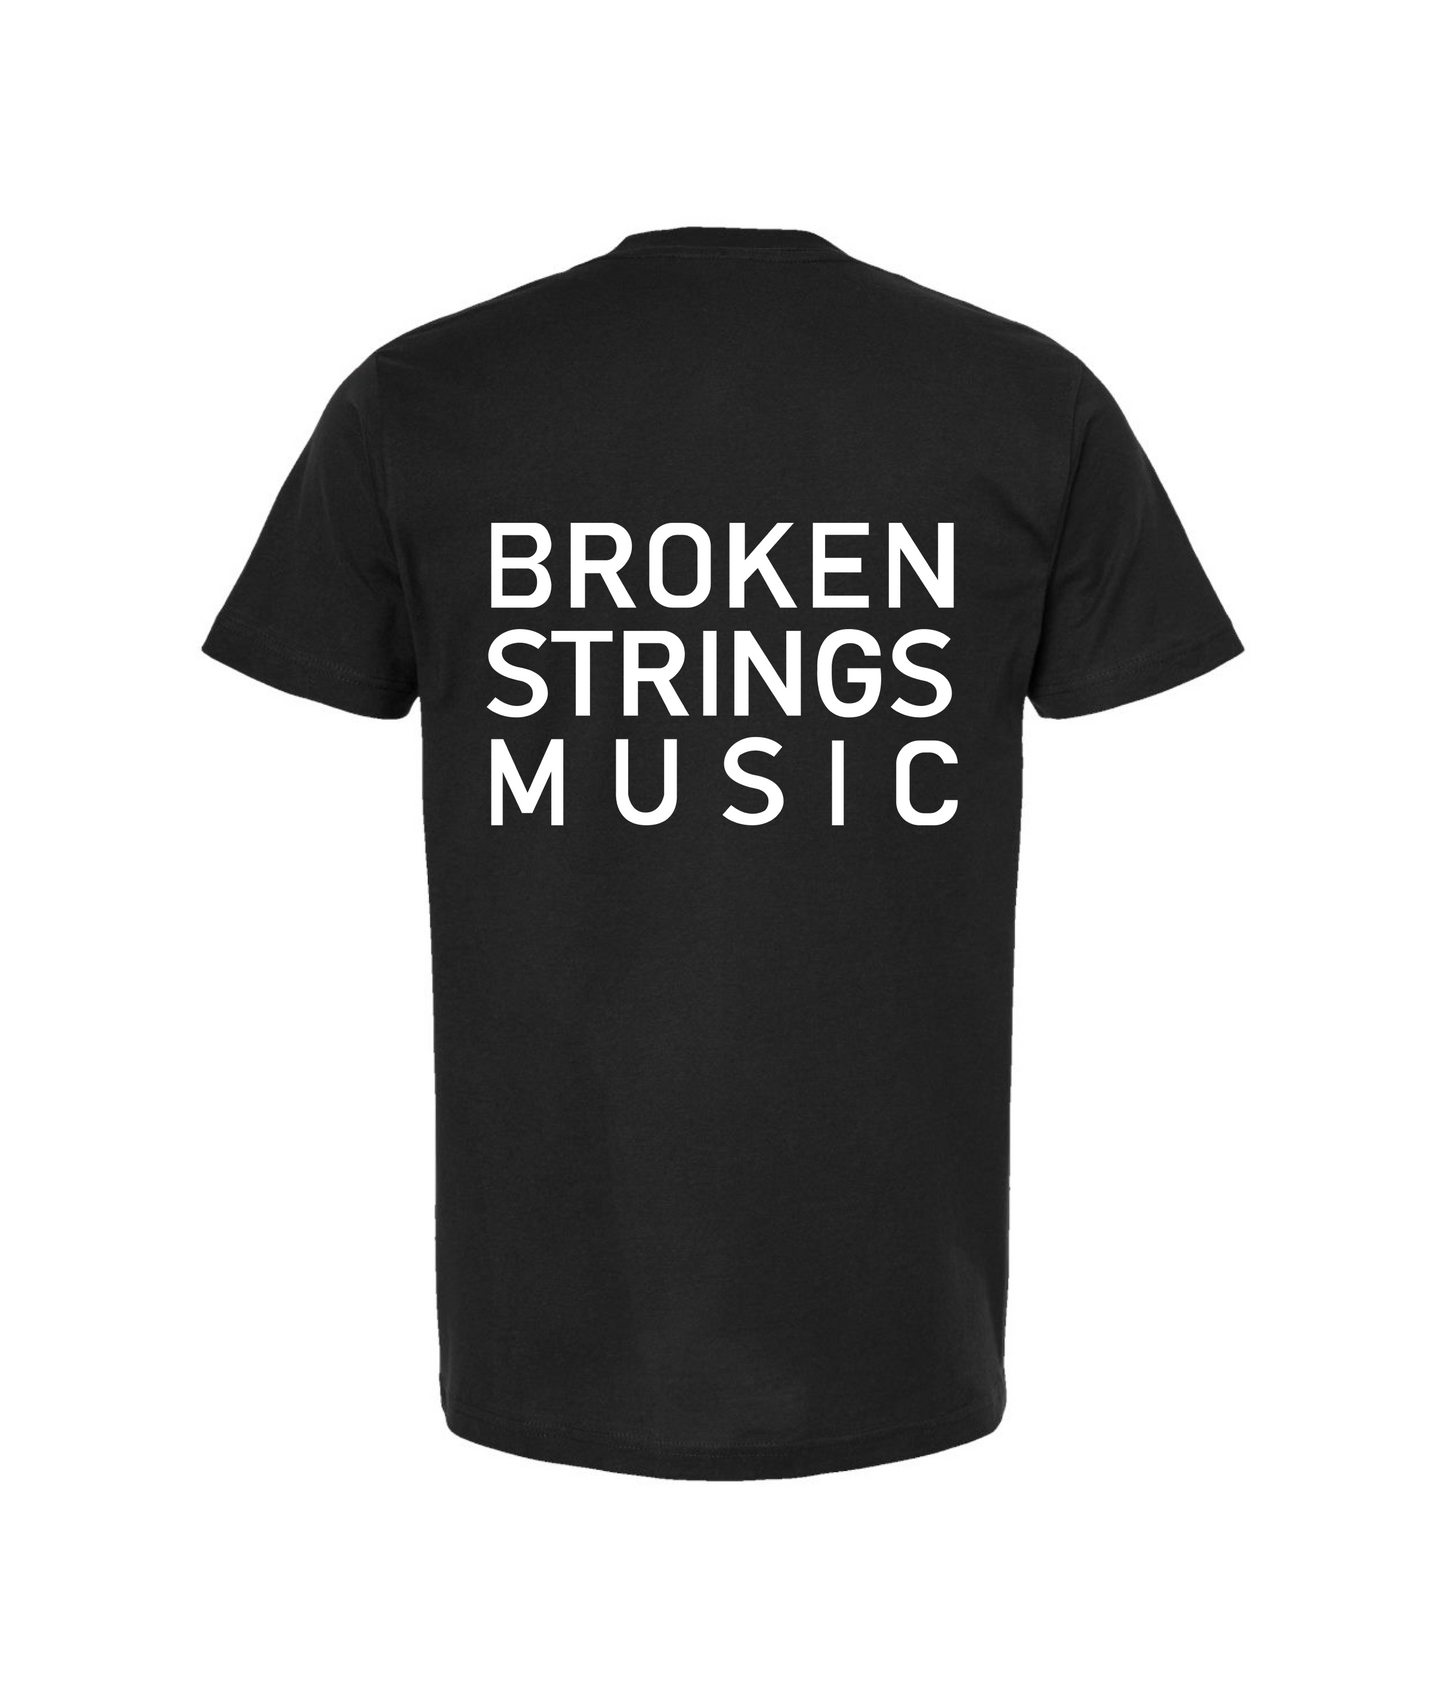 BROKEN STRINGS - BROKEN STRINGS MUSIC - Black T Shirt